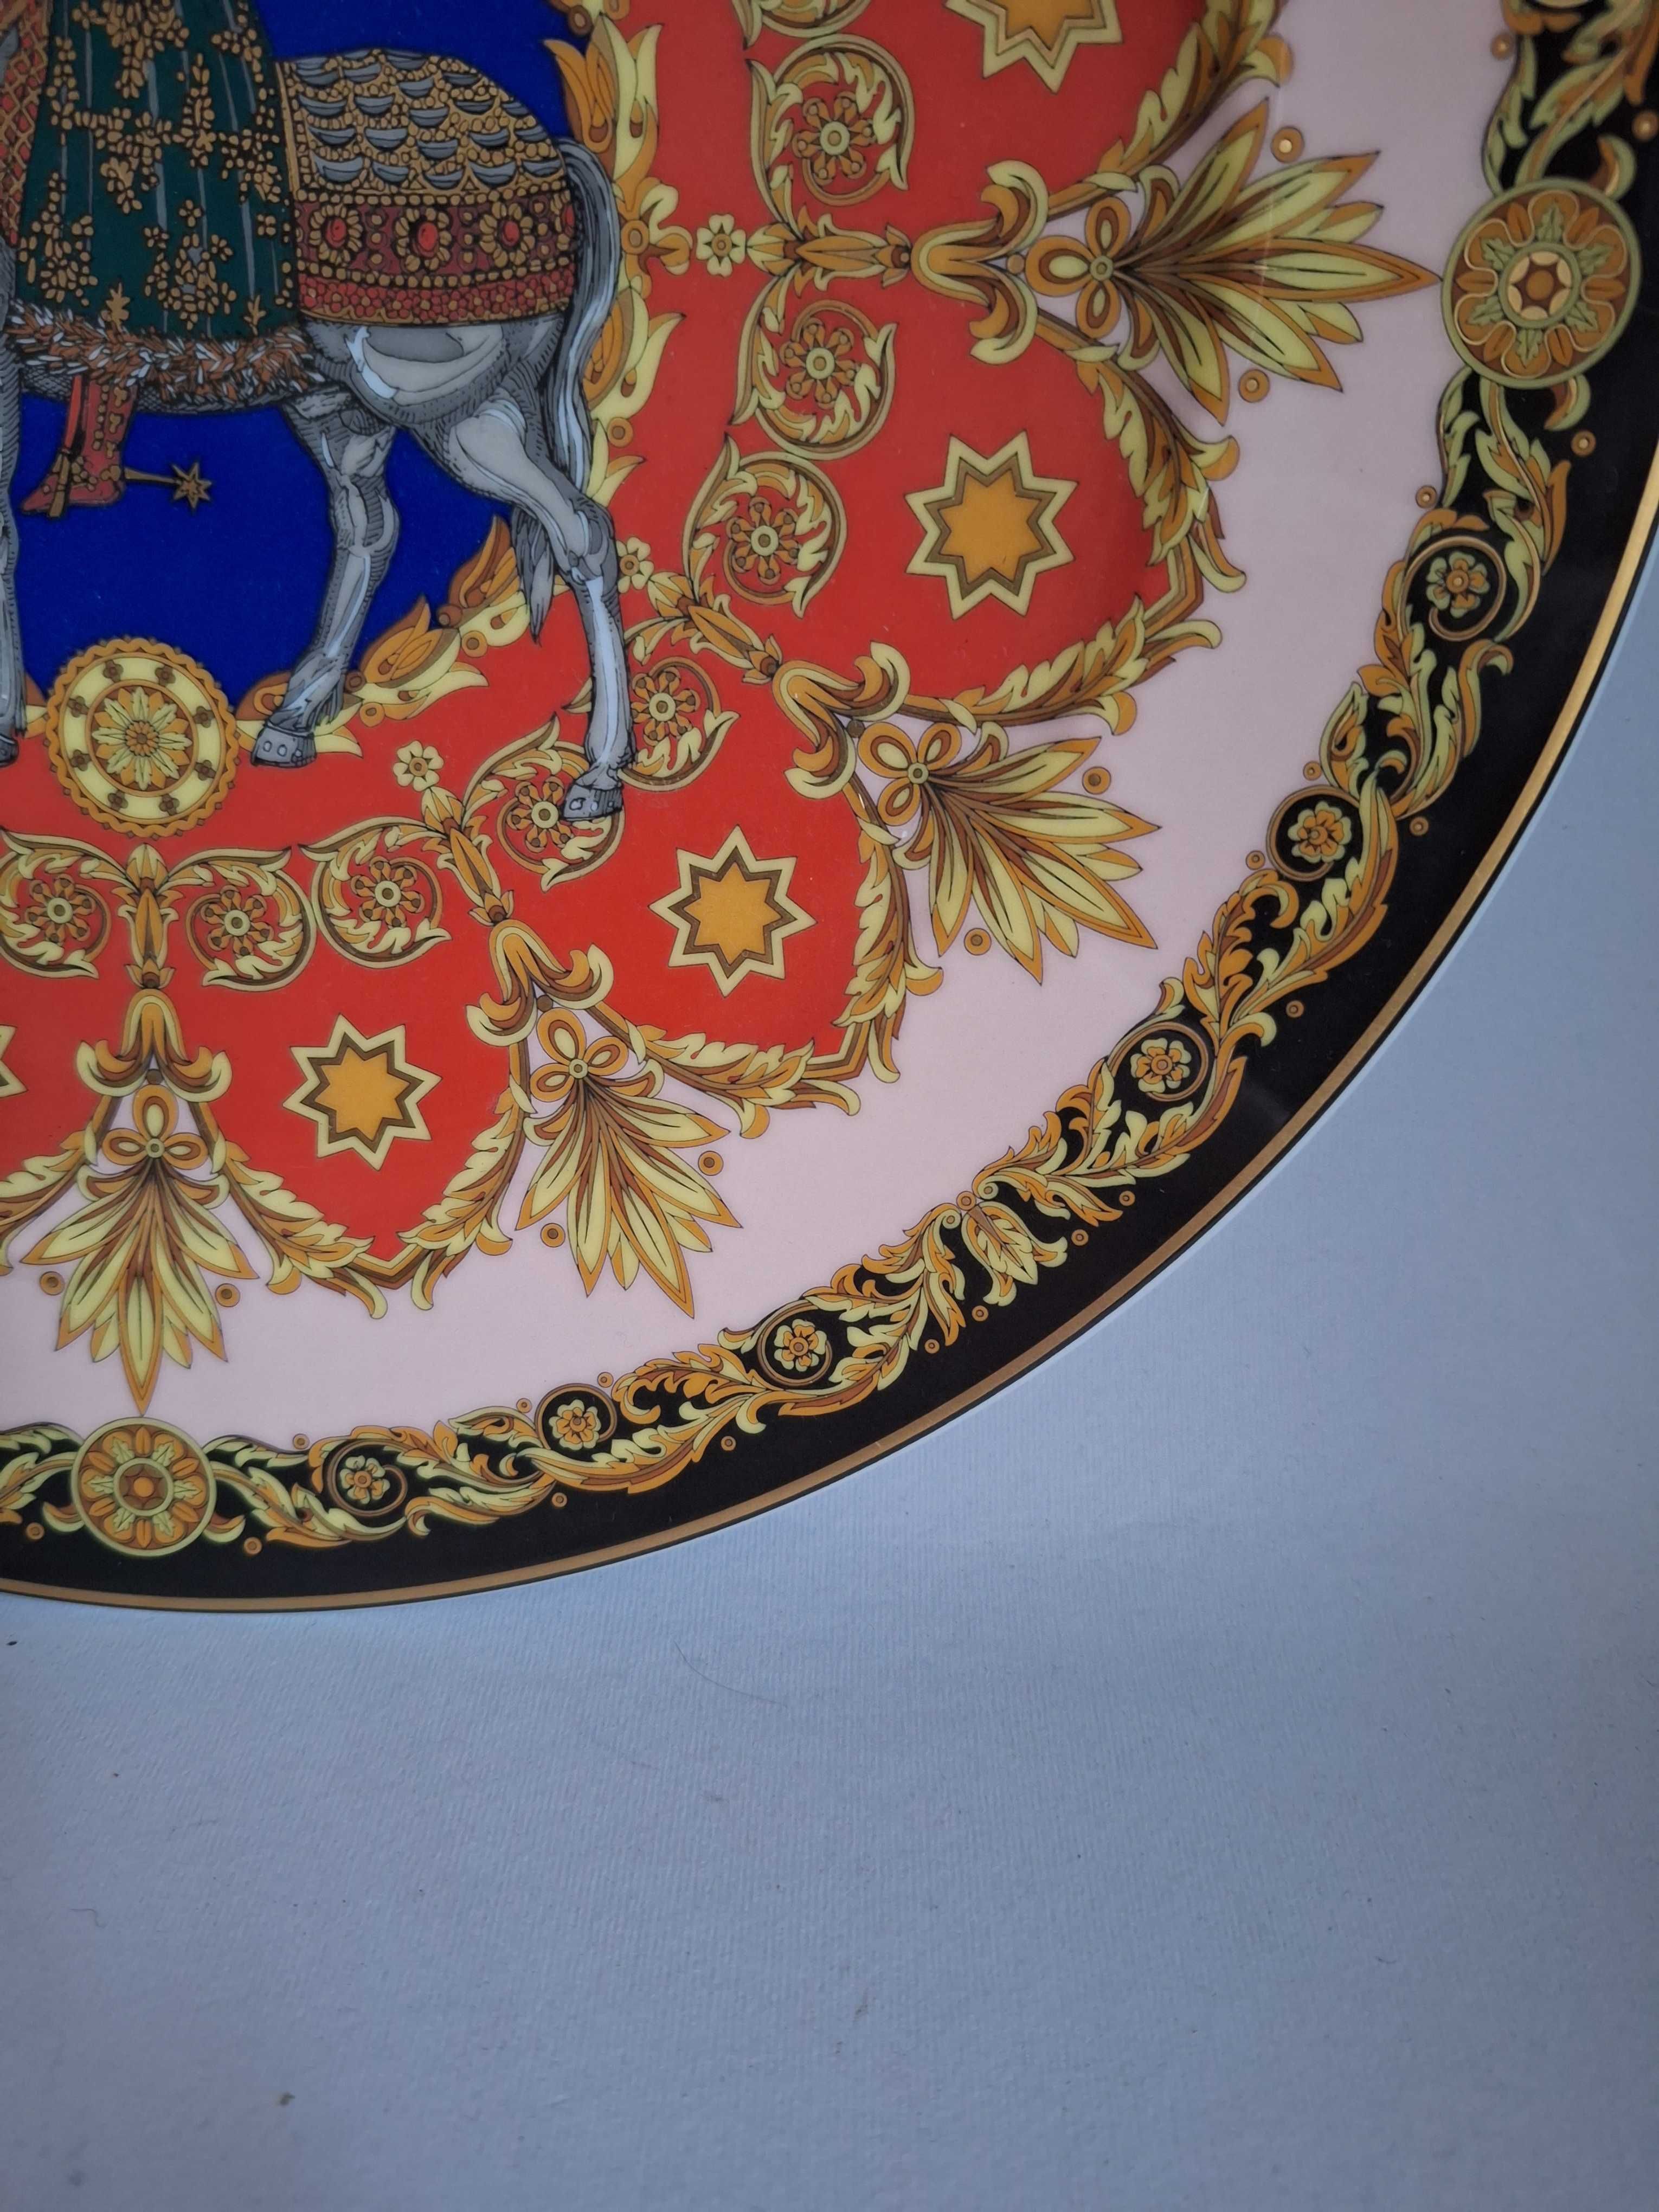 Rosenthal Versace тарелка настенная Le Roi Balthasar 1996 г.